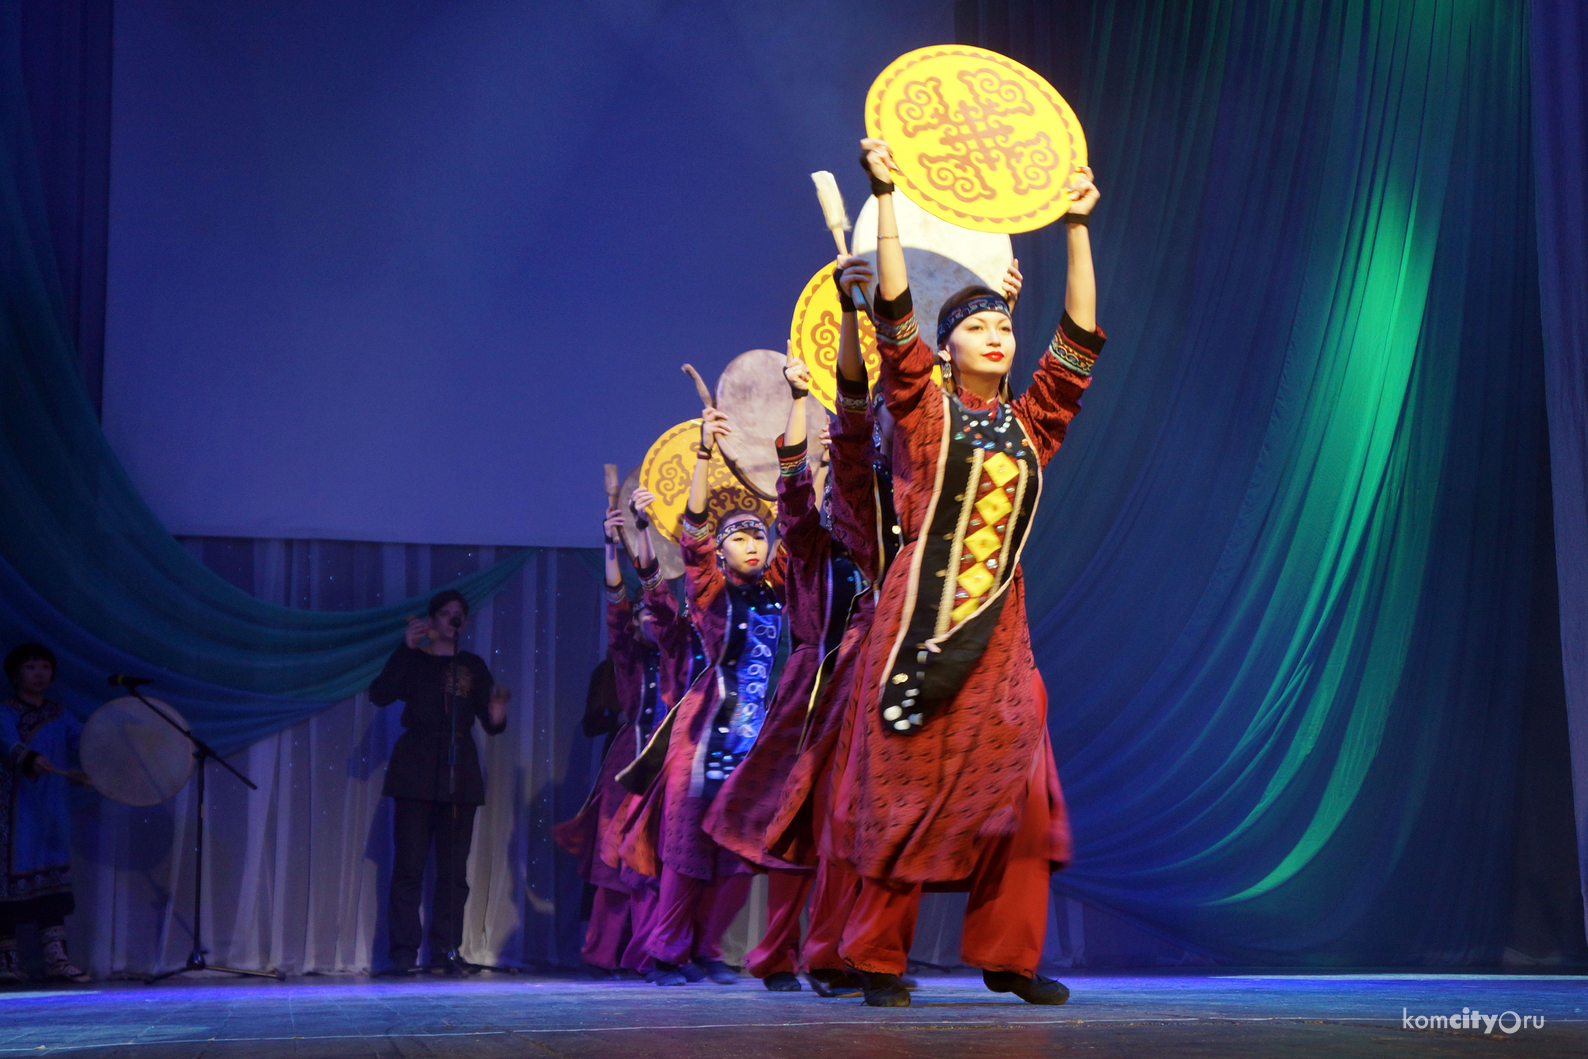 Ансамбль «Гивана» подтвердил высокое звание народного коллектива в рамках национального фестиваля коренных народов, проведённого в Комсомольске-на-Амуре